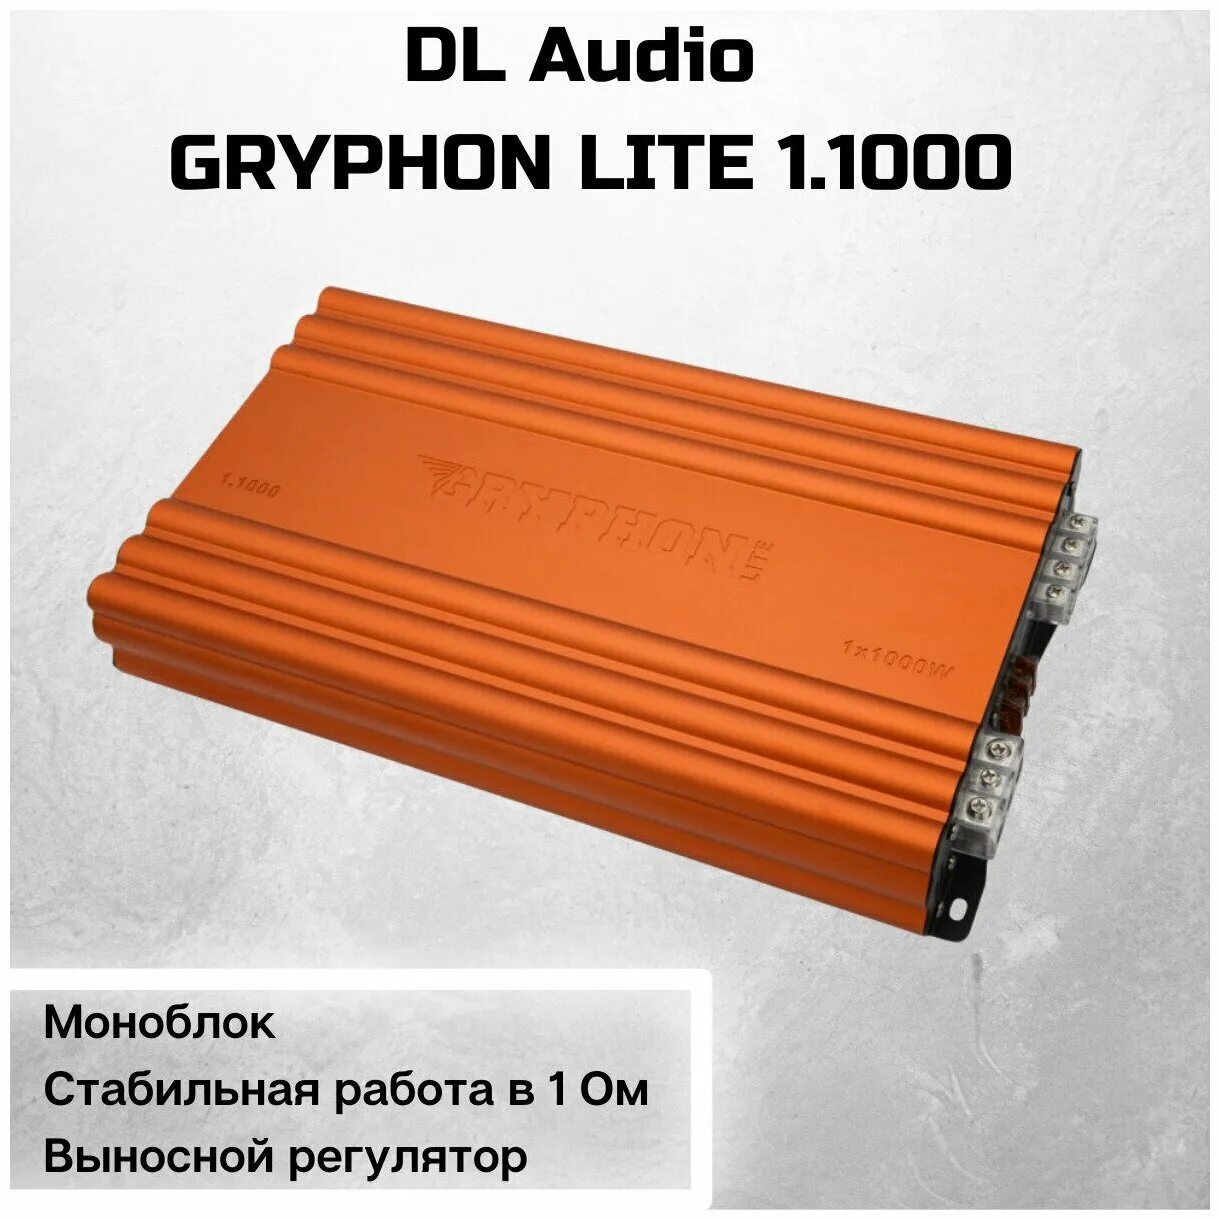 Моноблок dl. Усилитель Грифон 1.1000. Усилитель Gryphon Lite 1.1000. Автомобильный усилитель DL Audio Gryphon Lite 1.1000. DL Audio Gryphon Lite 1.100.